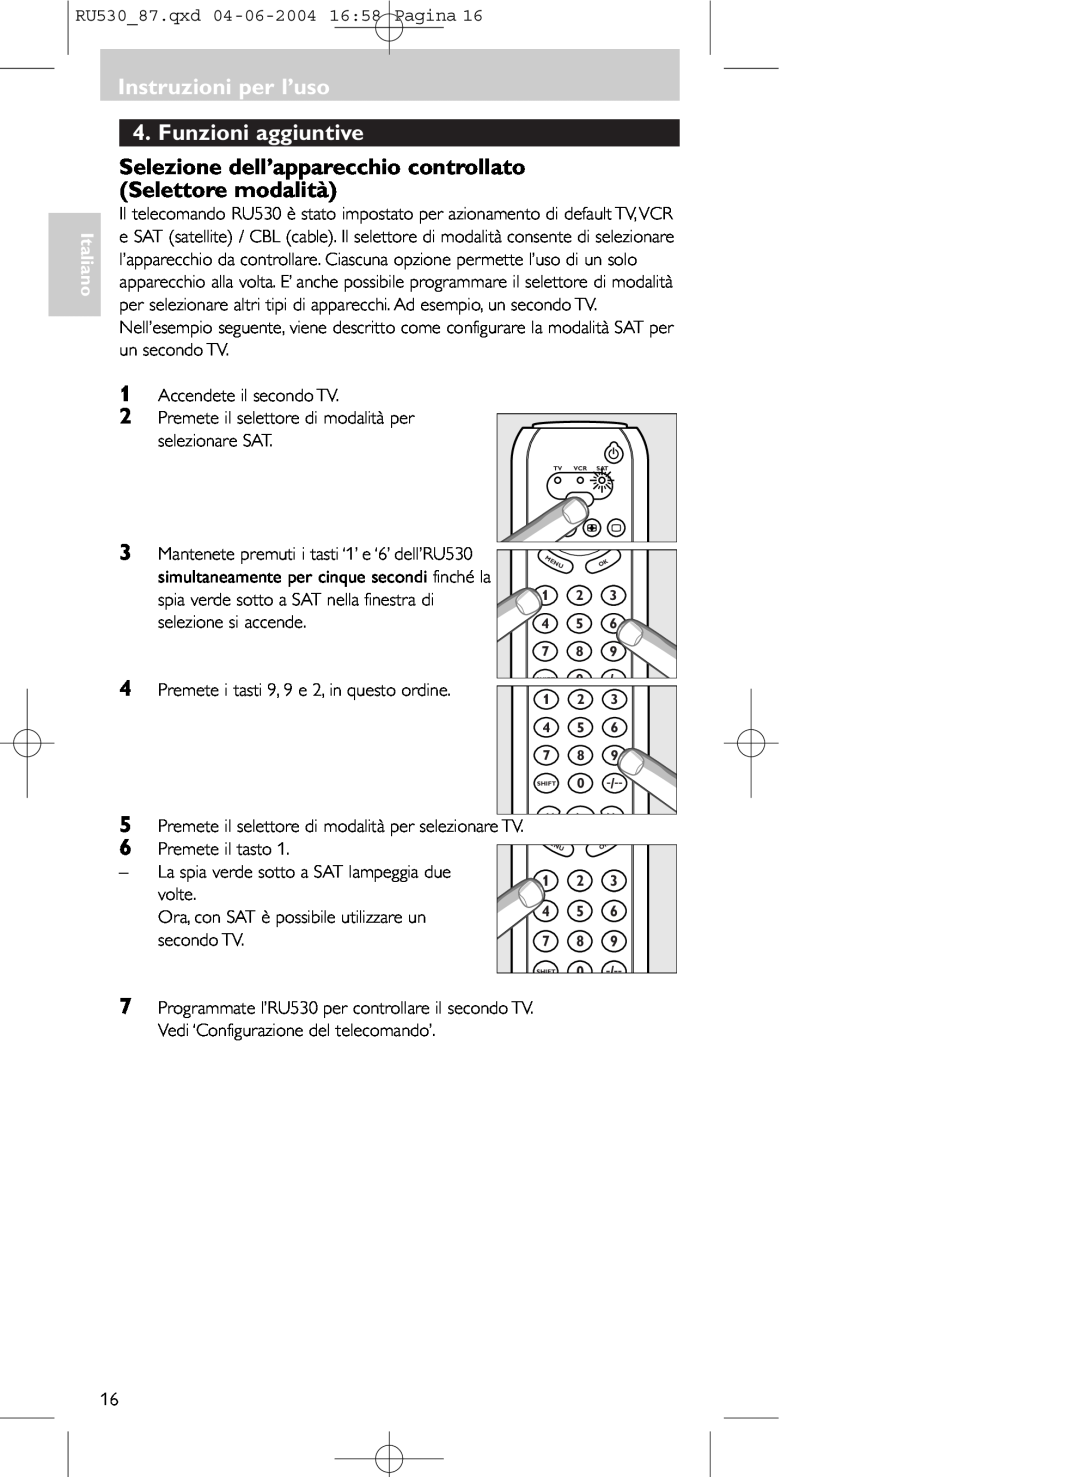 Philips SBC RU 530/87U manual Instruzioni per l’uso 4. Funzioni aggiuntive, Premete il tasto, volte, secondo TV, Italiano 